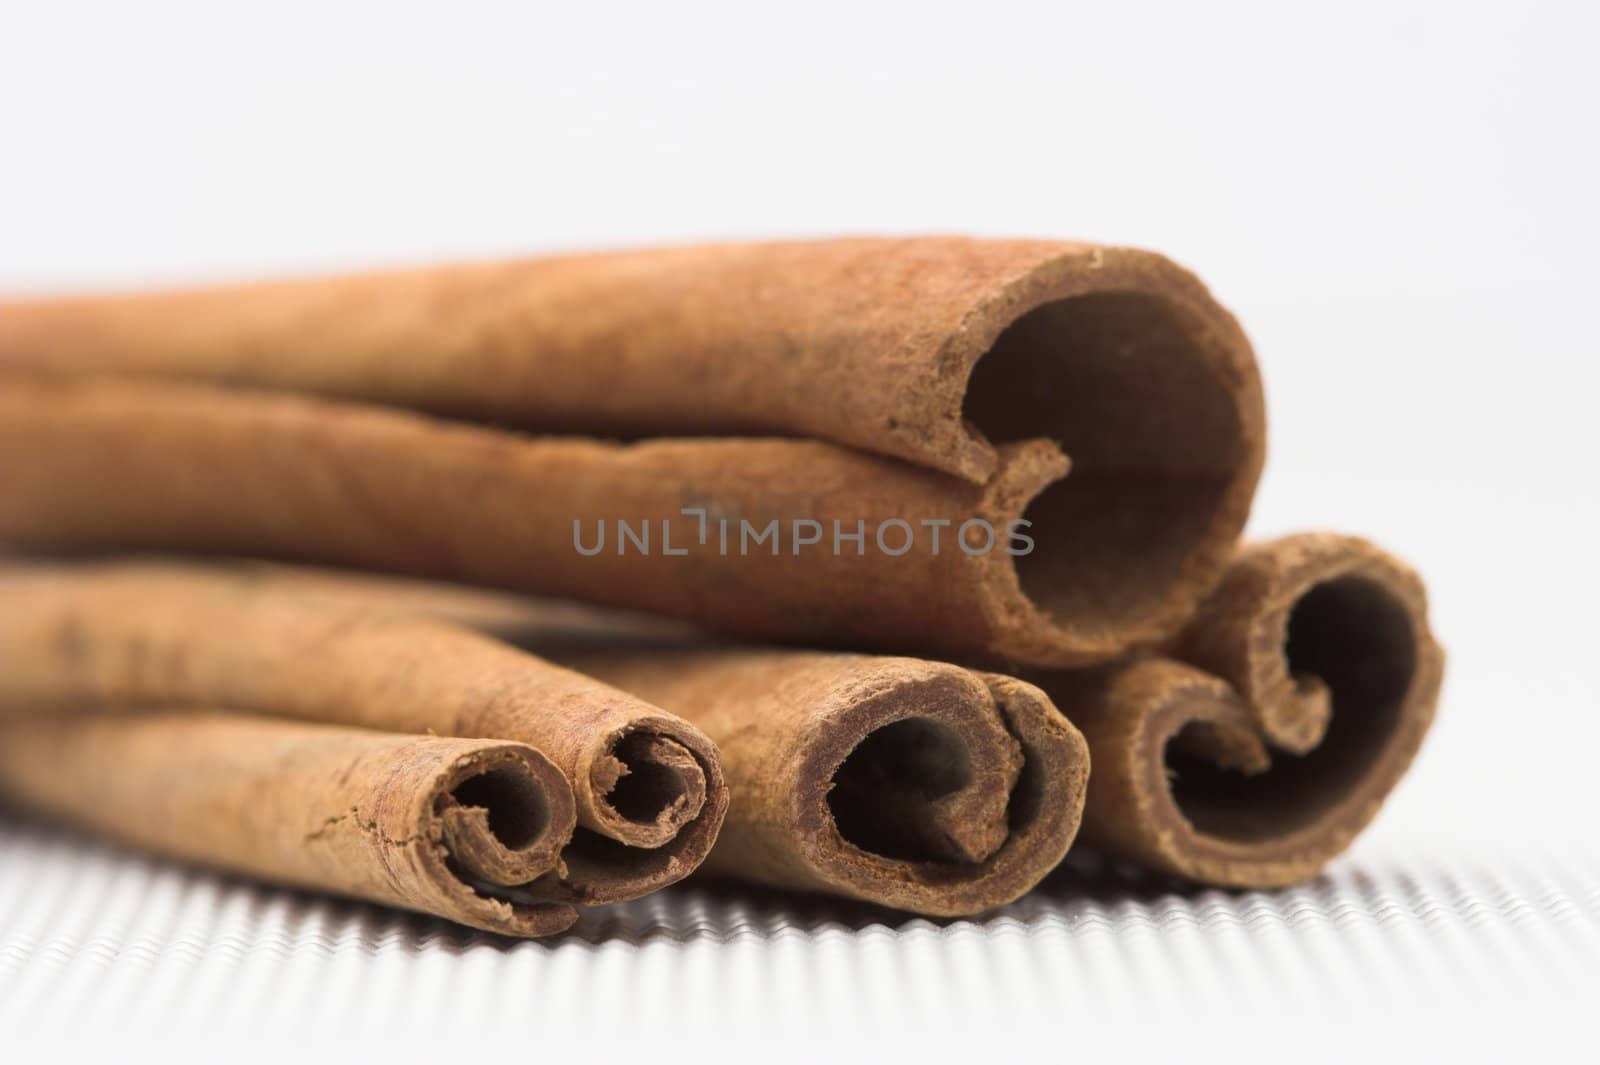  cinnamon sticks by alexkosev